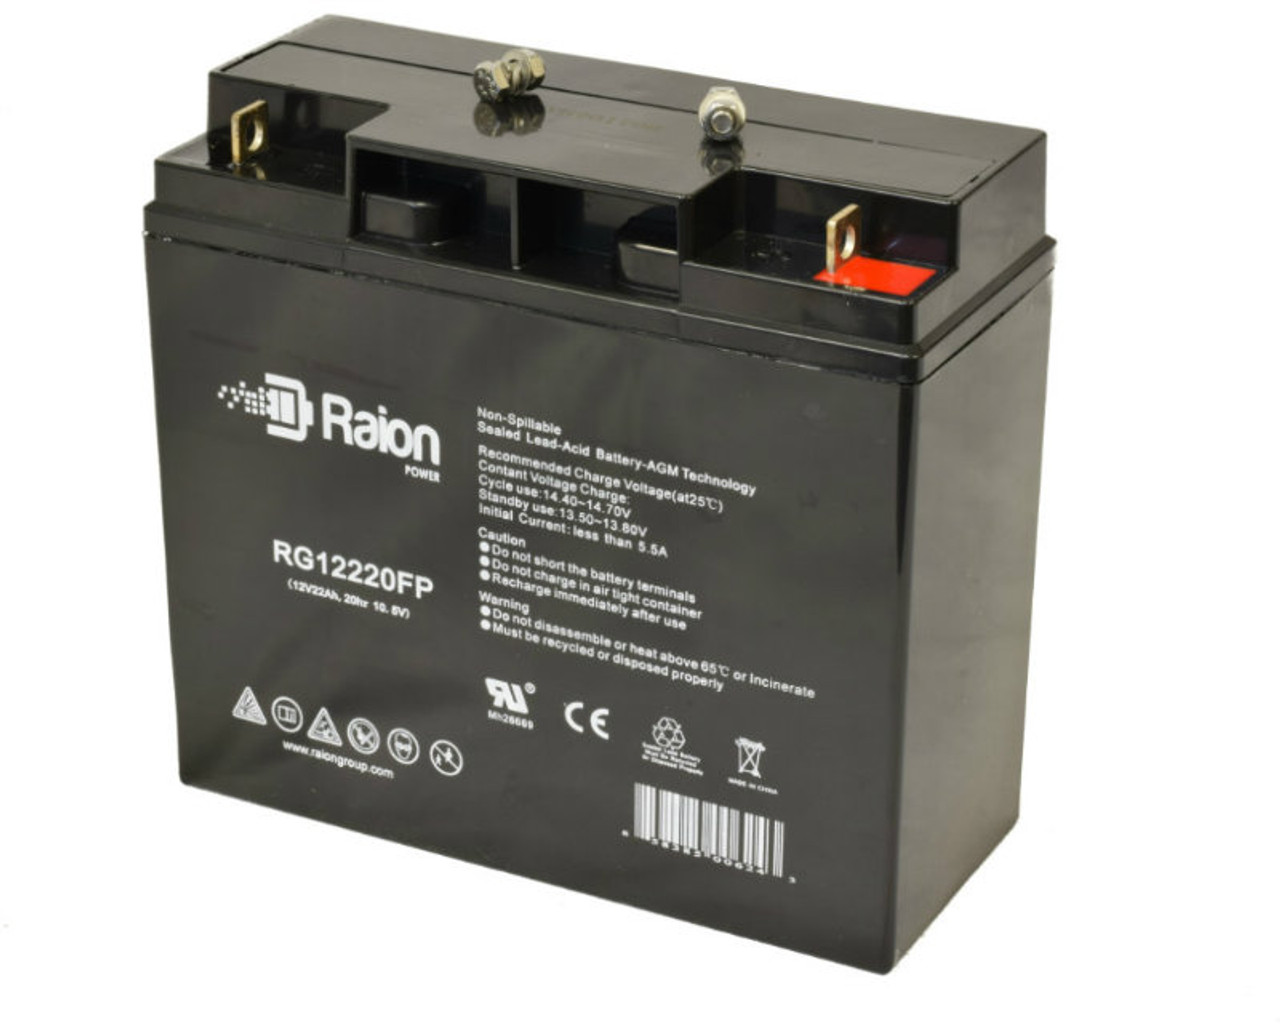 Raion Power RG12220FP 12V 22Ah Lead Acid Battery for Damaco D99 Electric Wheelchair